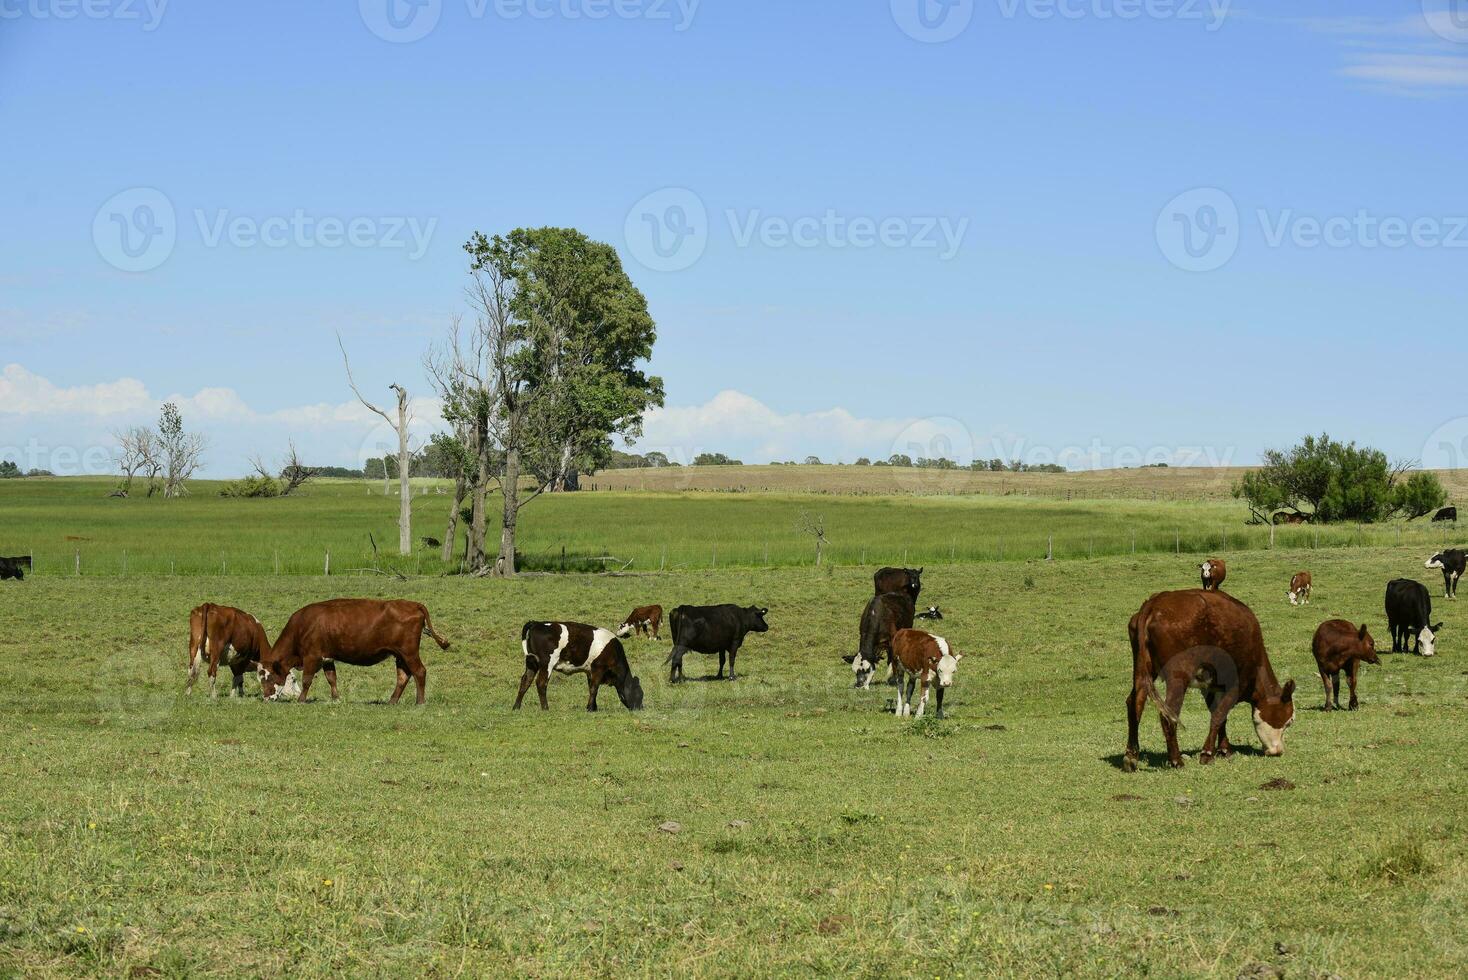 das Vieh im Argentinien Landschaft, Buenos Aires Provinz, Argentinien. foto